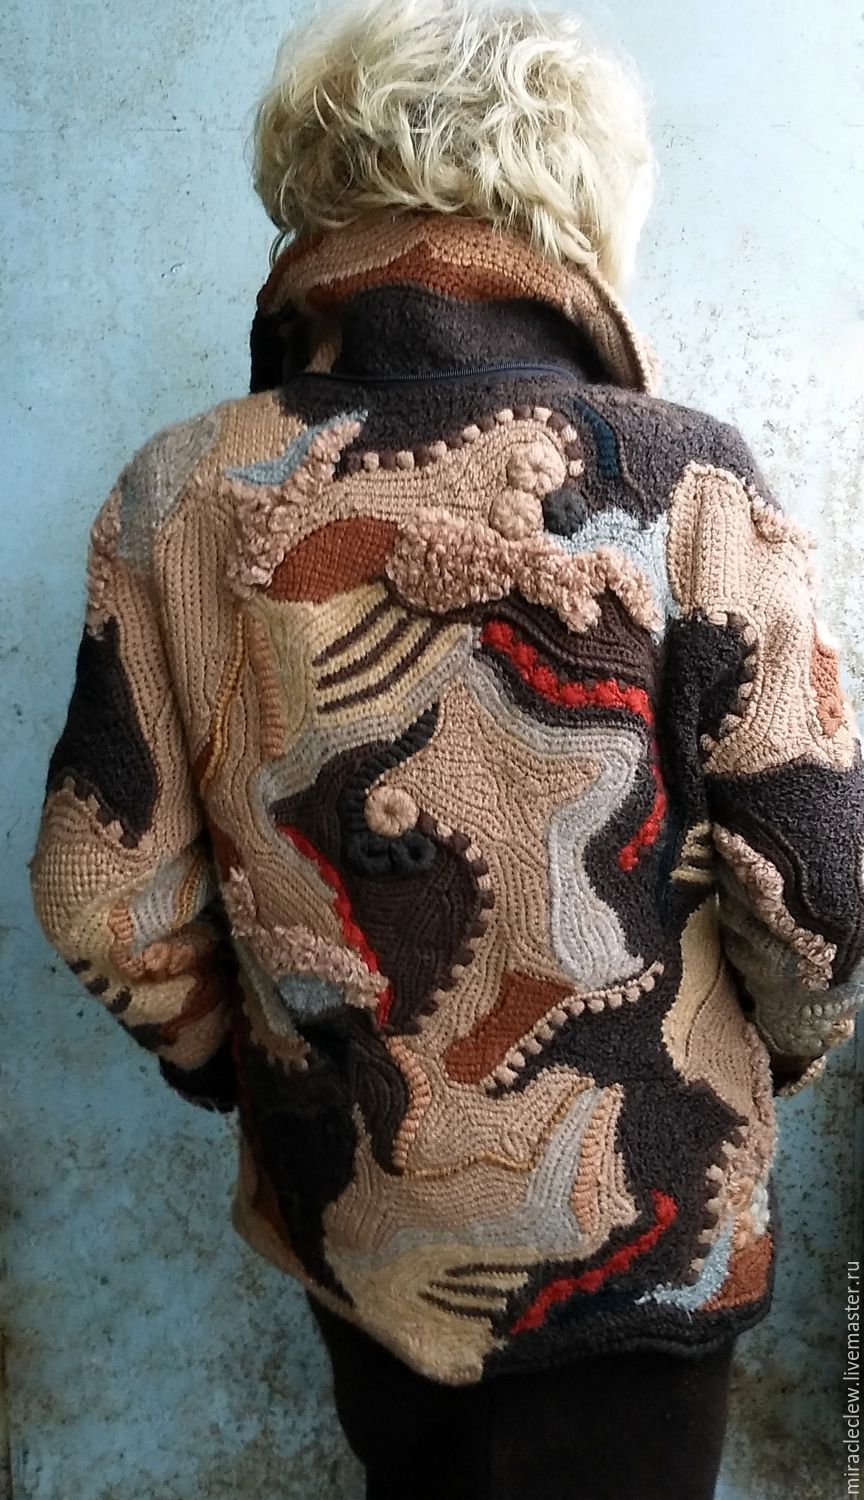 Схема вязания: Пуловер в стиле 